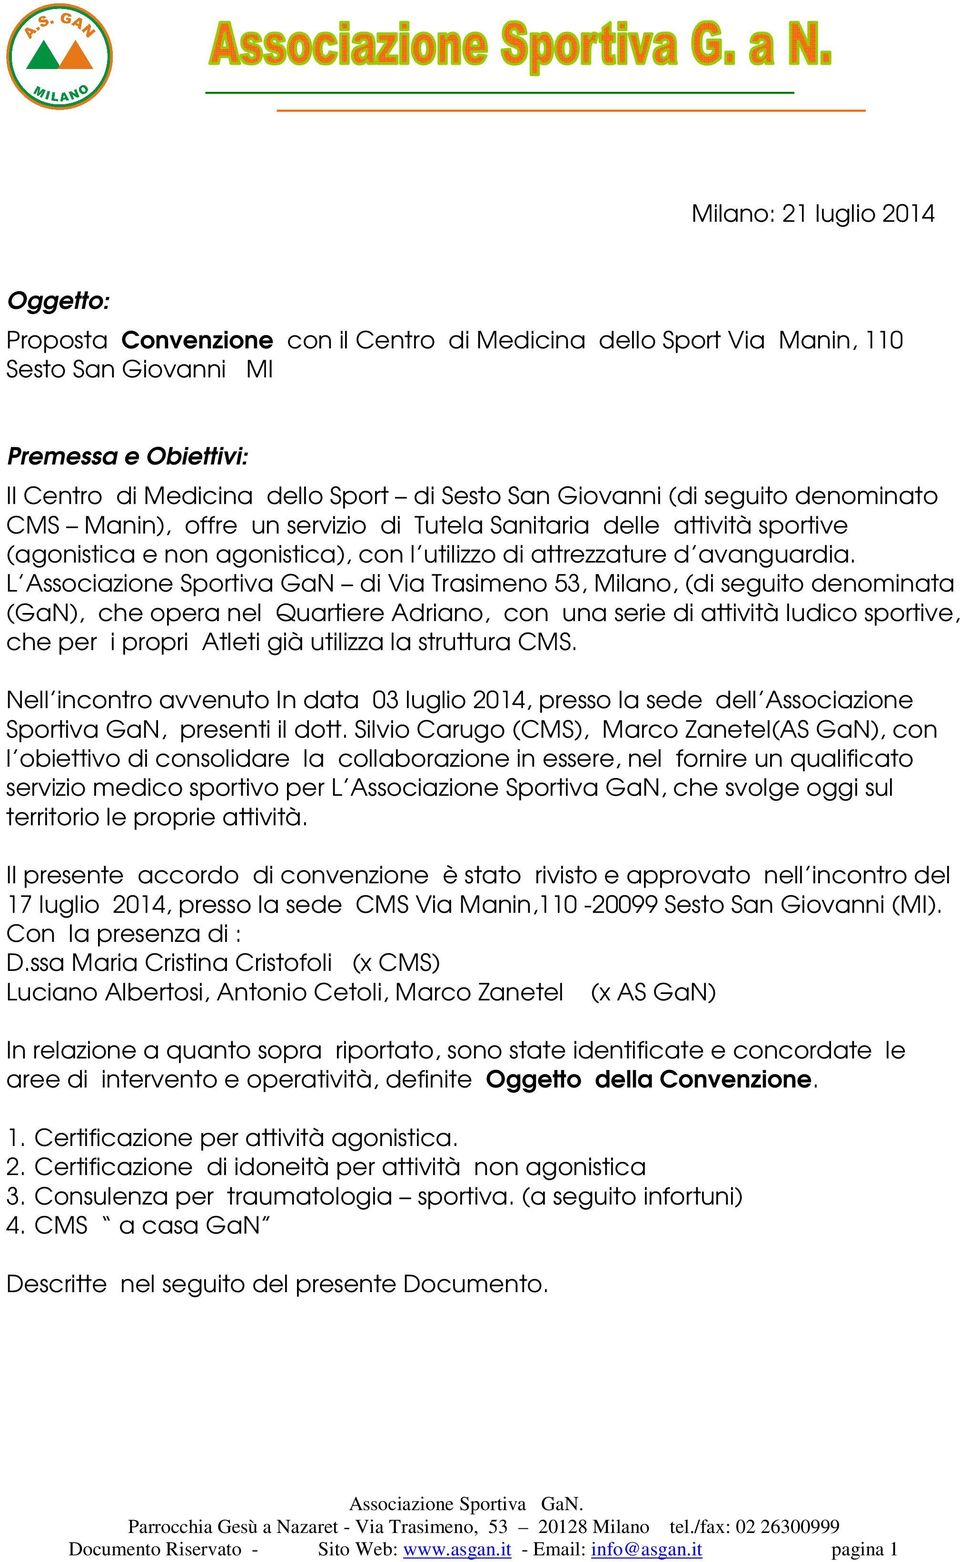 L Associazione Sportiva GaN di Via Trasimeno 53, Milano, (di seguito denominata (GaN), che opera nel Quartiere Adriano, con una serie di attività ludico sportive, che per i propri Atleti già utilizza